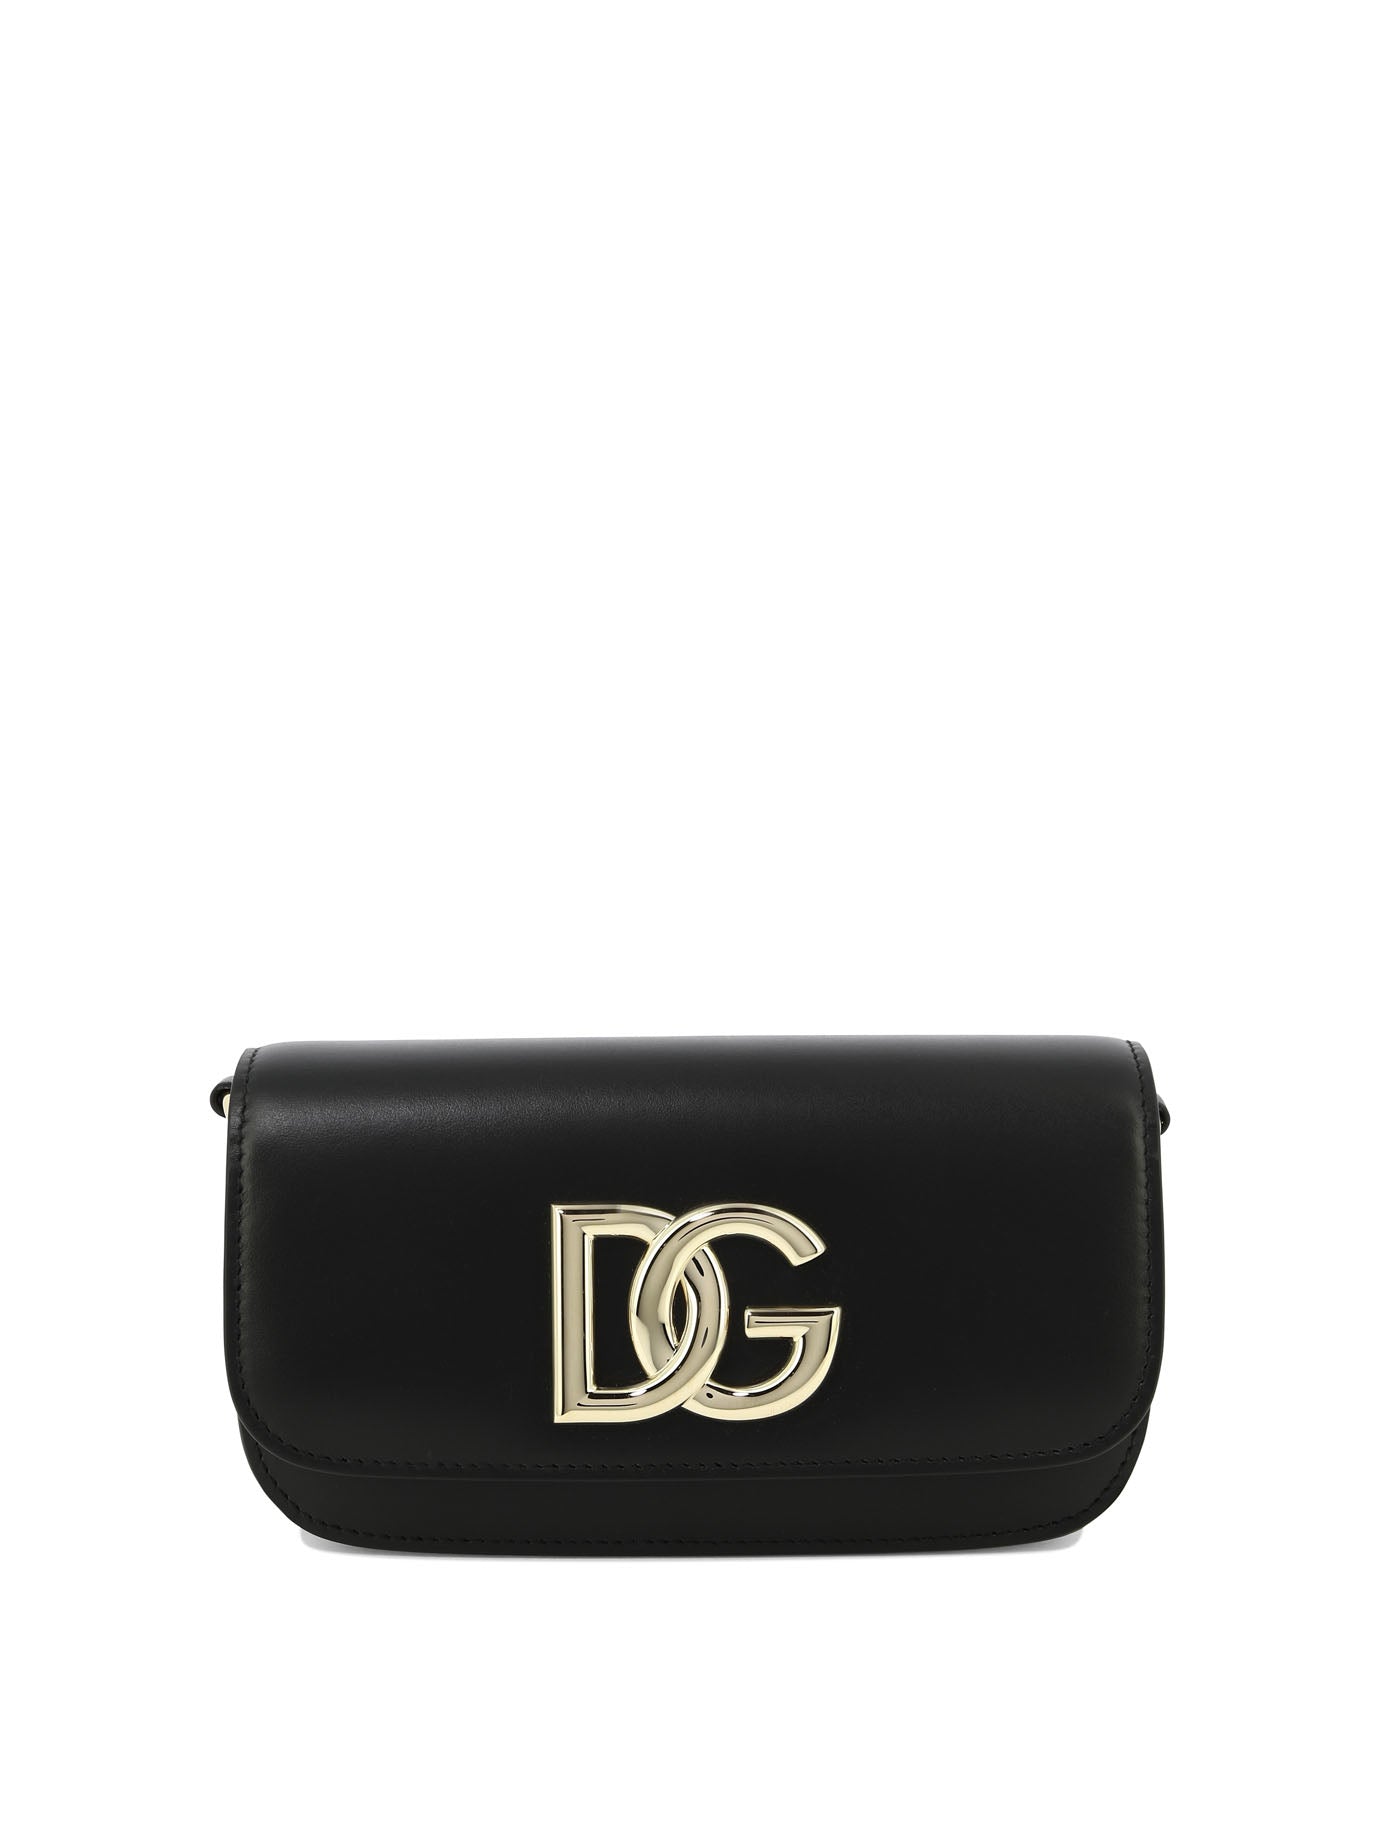 Shop Dolce & Gabbana "3.5" Crossbody Bag